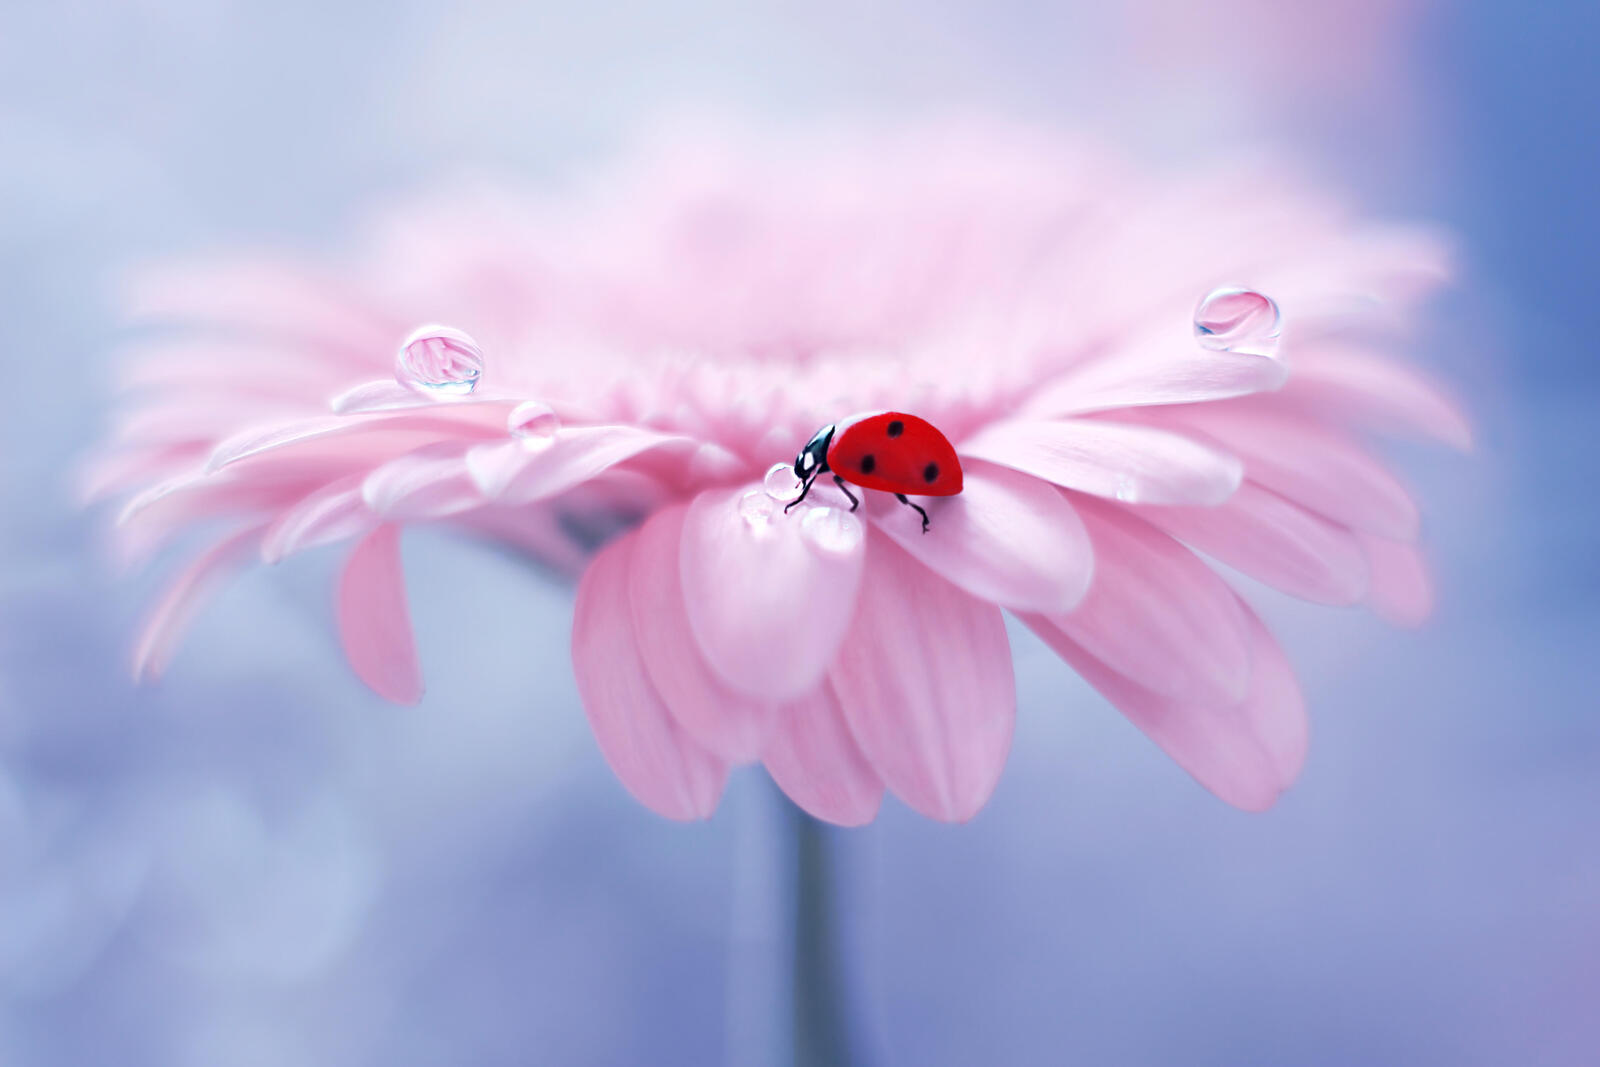 Wallpapers ladybug pink flower flower on the desktop